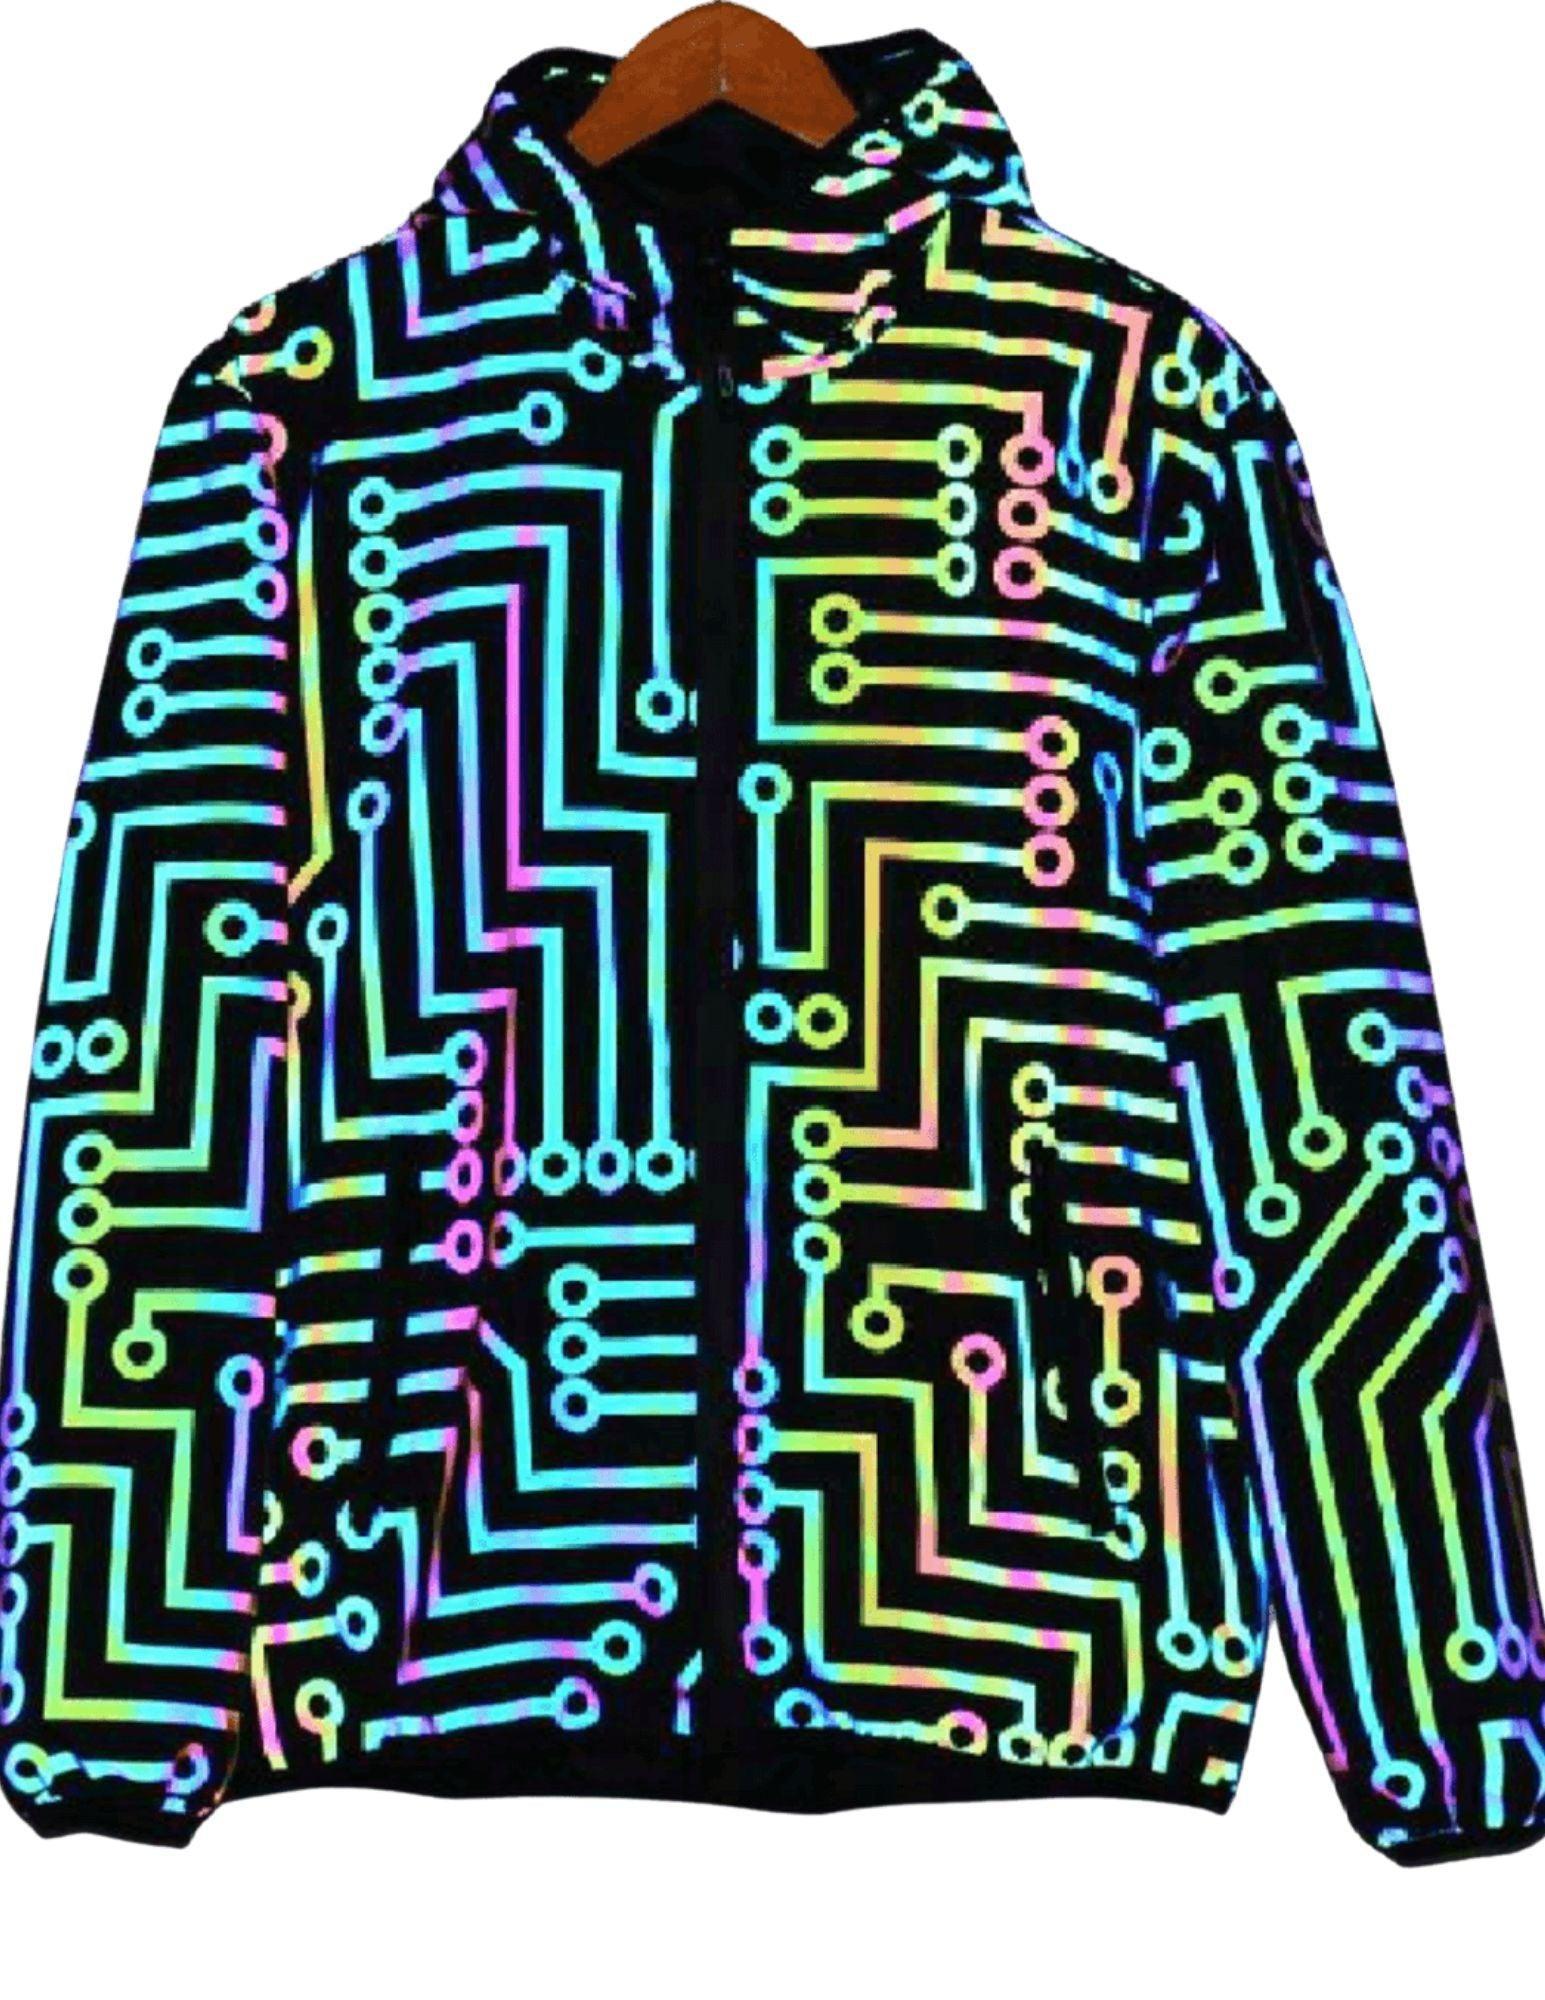 Glow in Dark Neon Reflective Jacket Pants Circuit Board Pattern